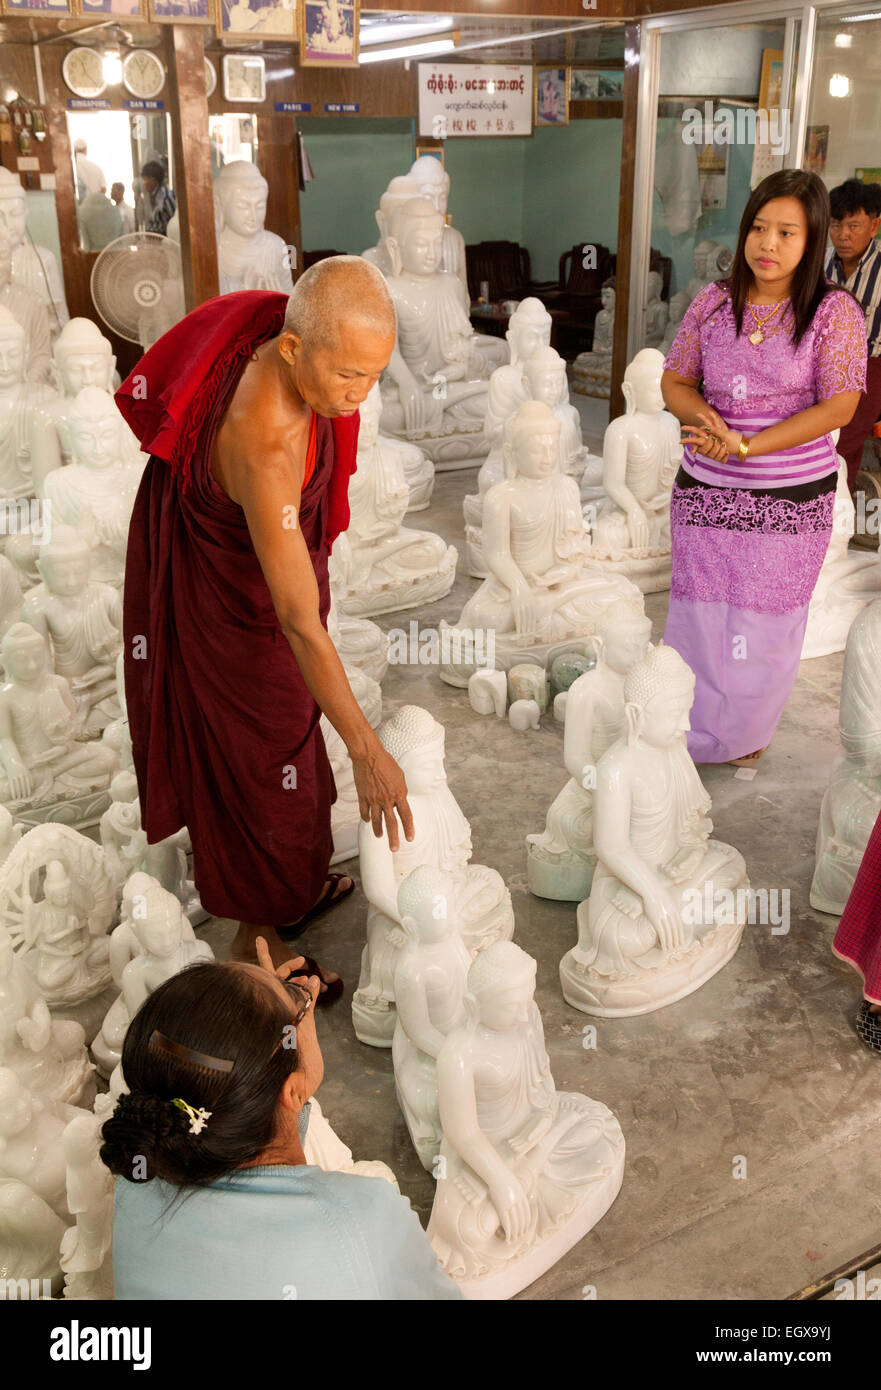 Monje budista shopping y comprar una estatua de Buda, Mandalay, Myanmar ( Birmania ), Asia Foto de stock